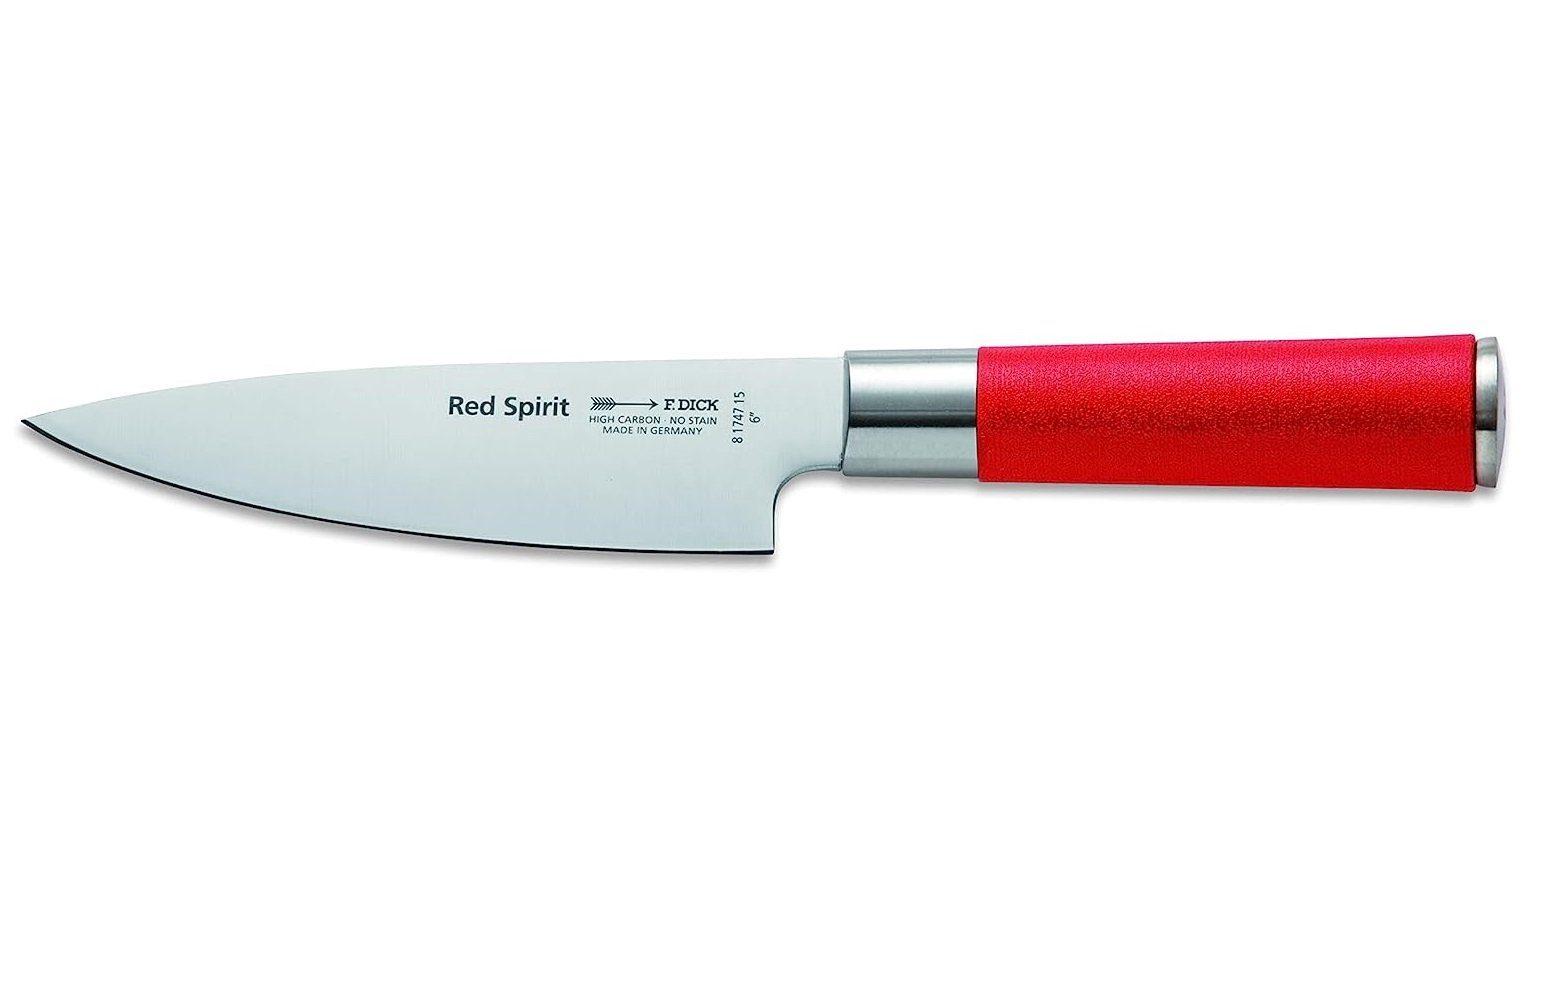 F. DICK Kochmesser Küchenmesser Red Spirit (Messer mit Klinge 15cm)